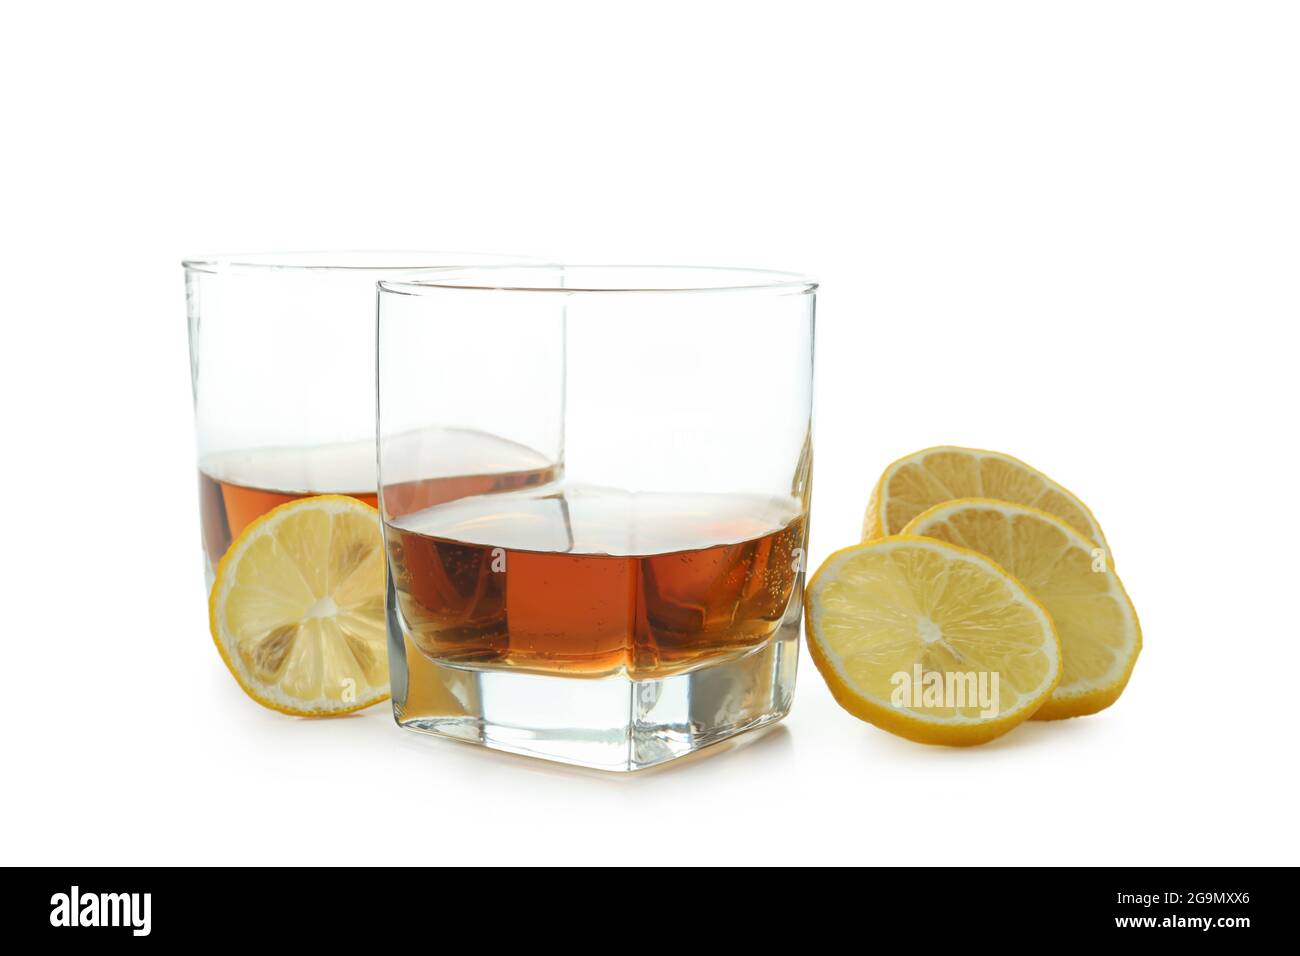 Concetto di bevande alcoliche dure con cognac, isolato su sfondo bianco Foto Stock